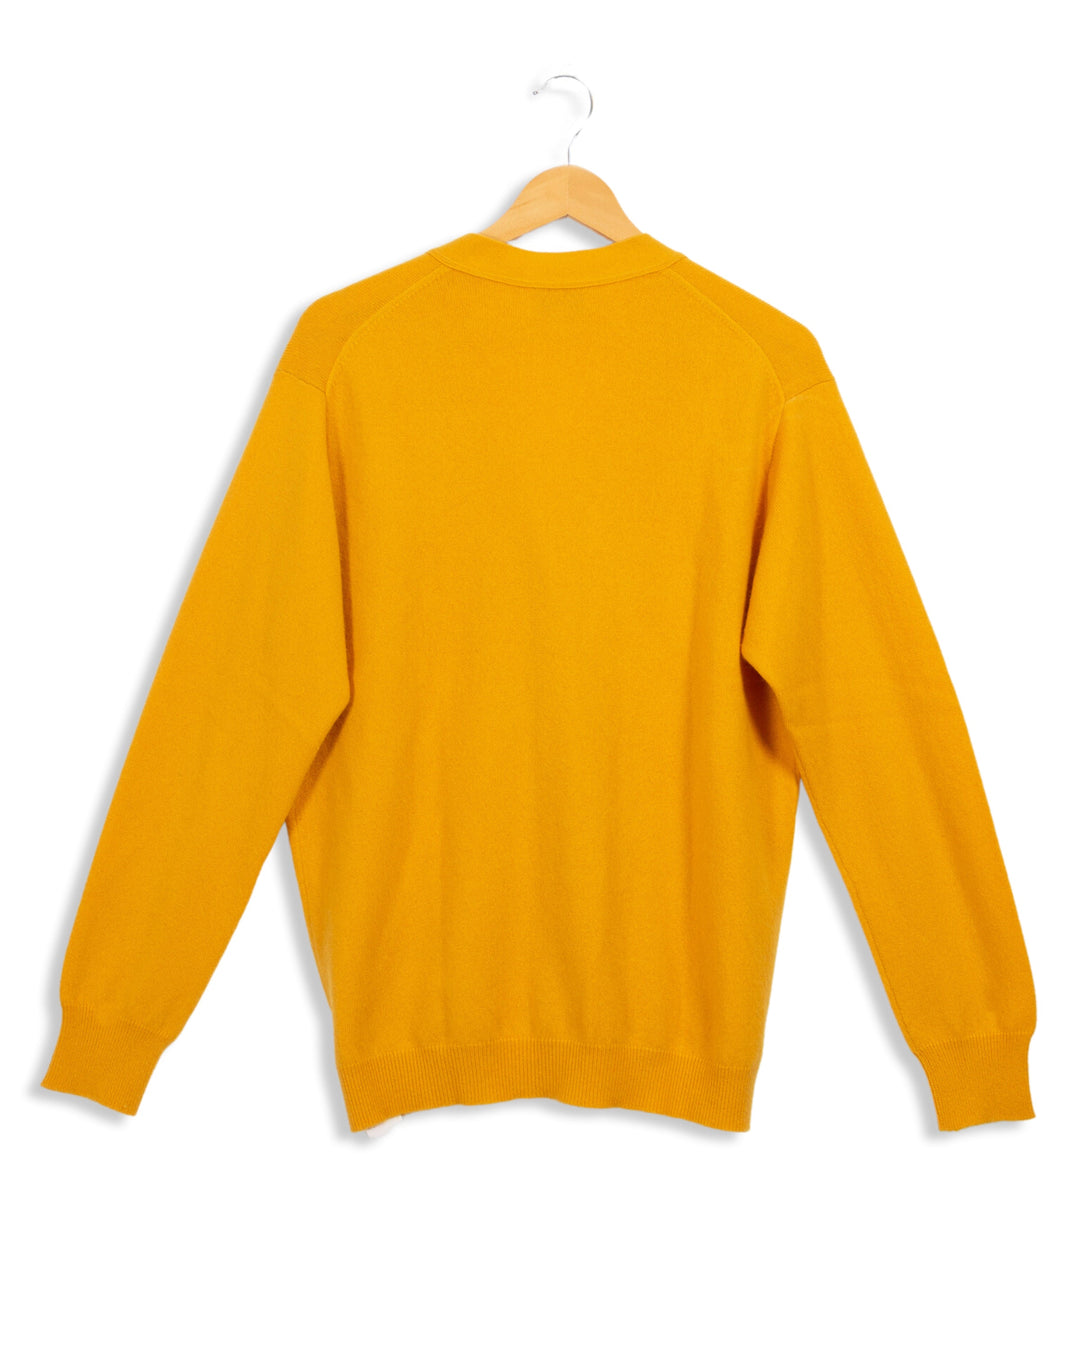 Gelber Pullover von Eric Bompard - L